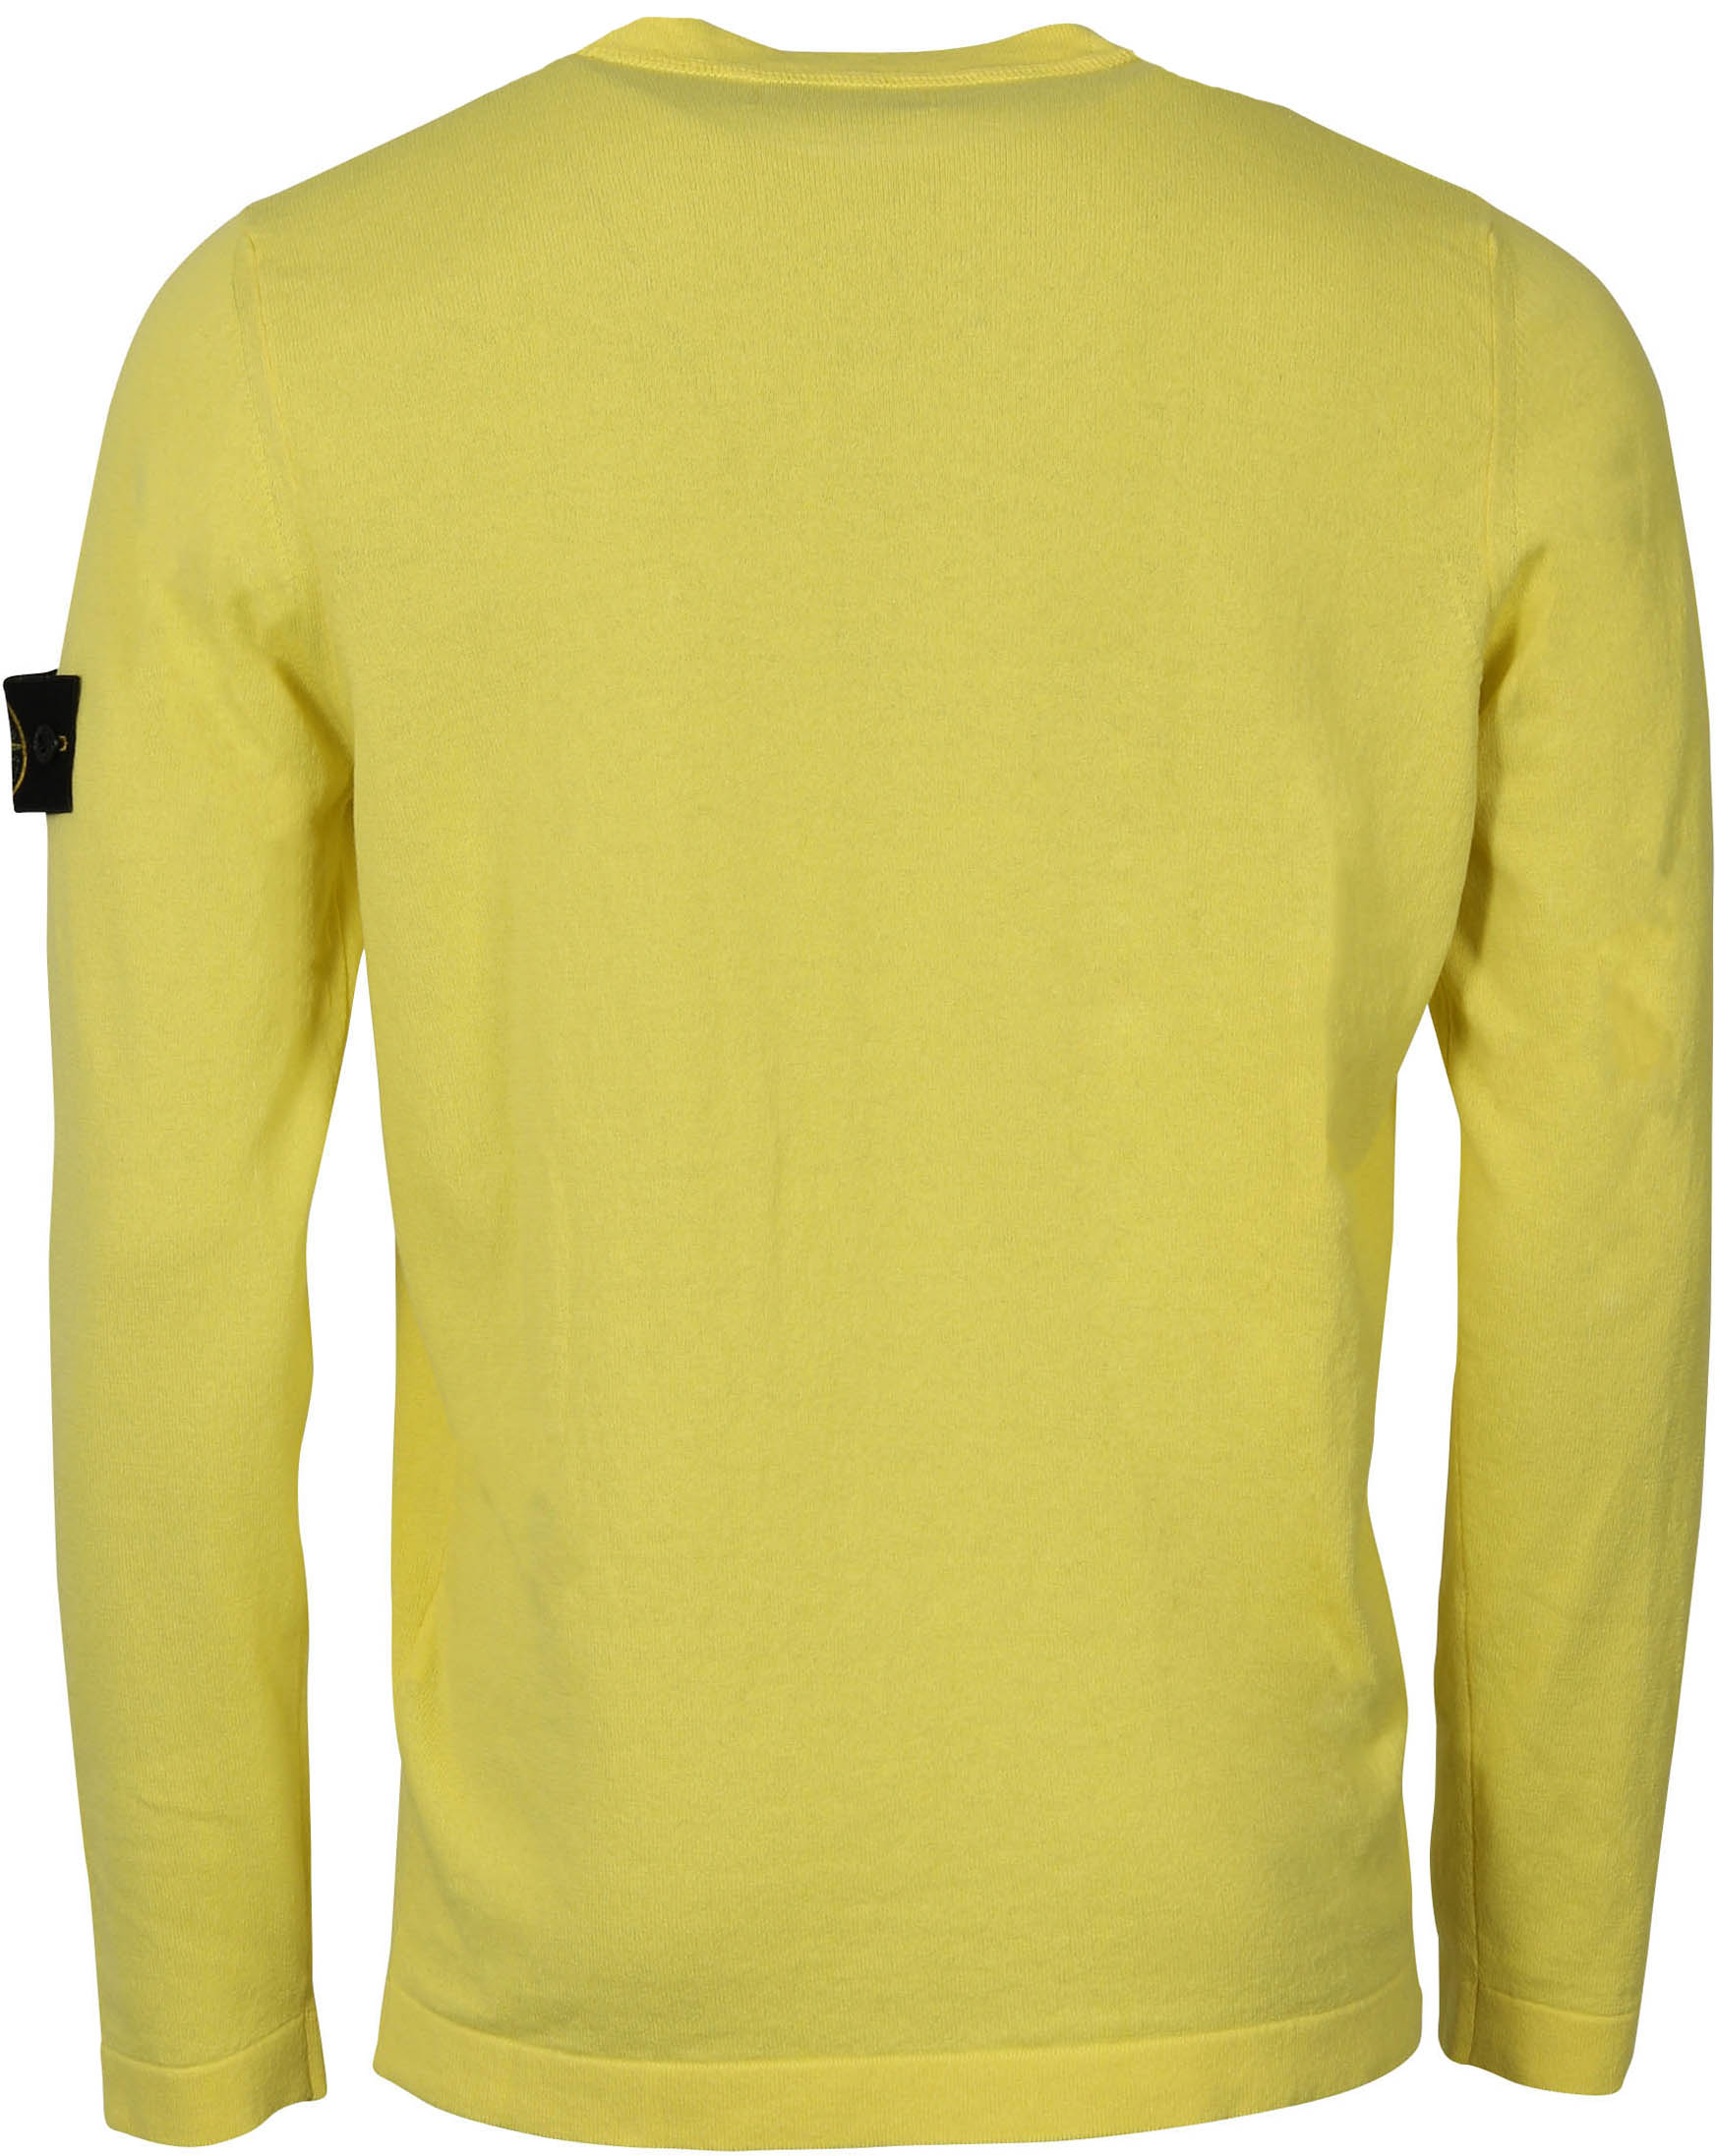 Stone Island Knit Sweater Yellow S